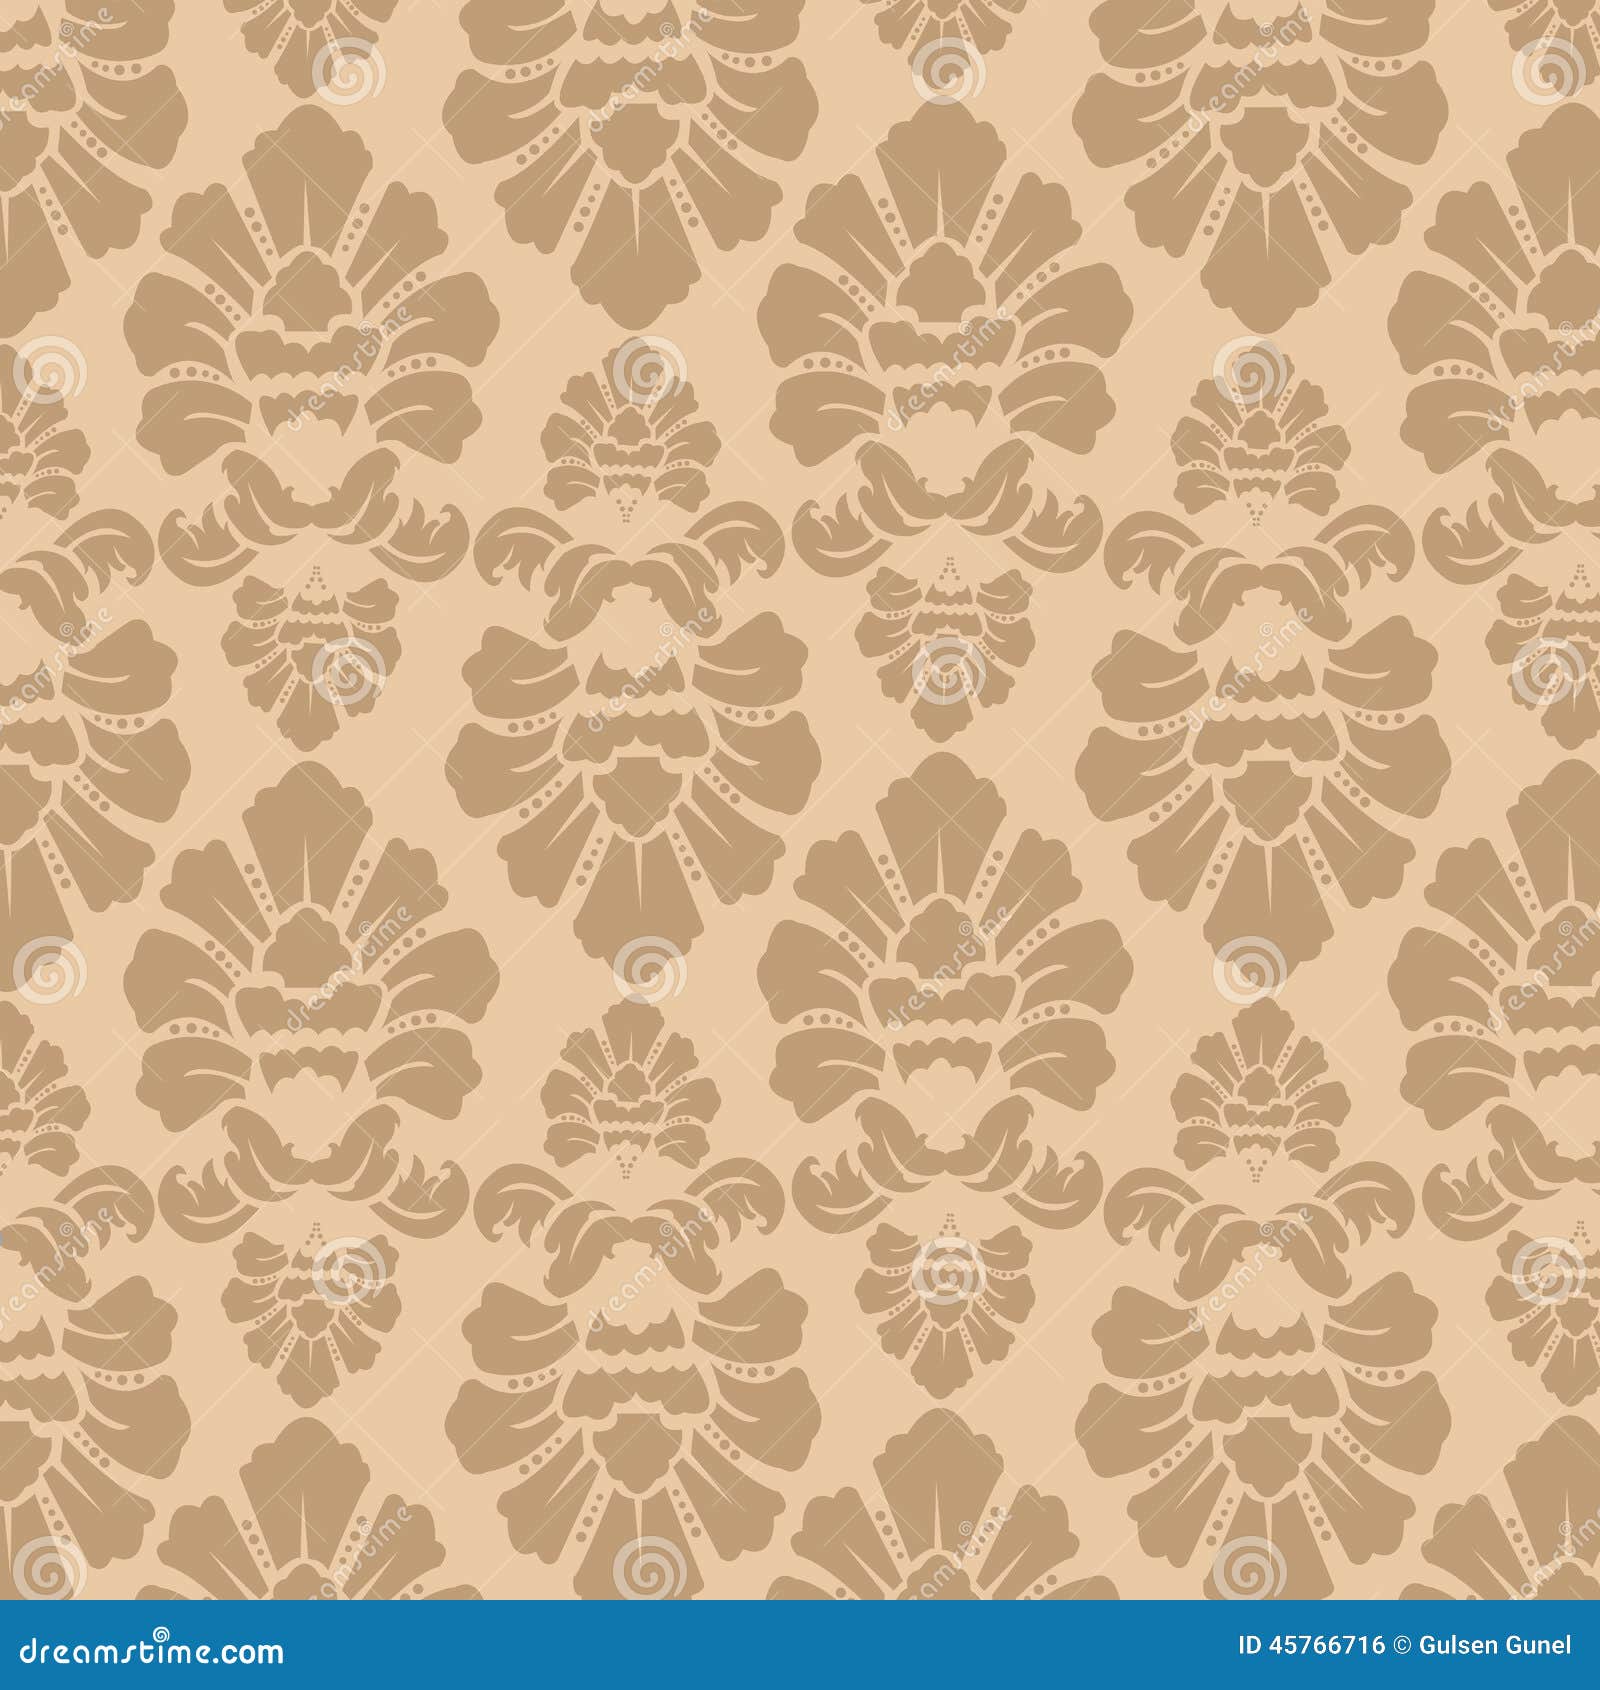 seamless fabric decoration pattern walpaper